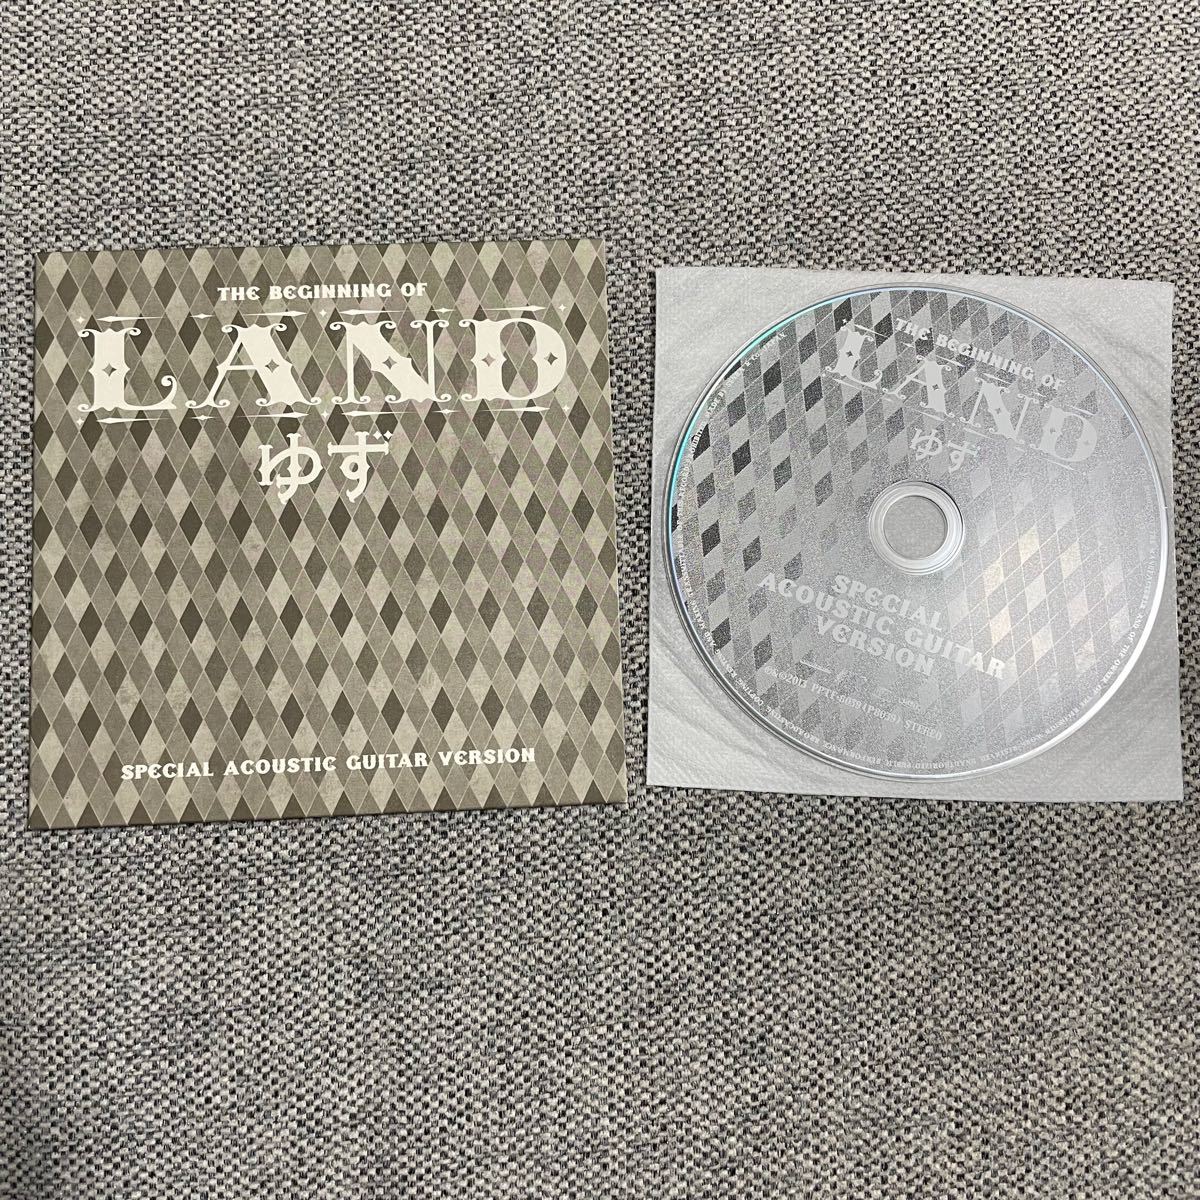 ゆず LAND Special Acoustic Guitar Version 限定盤CD